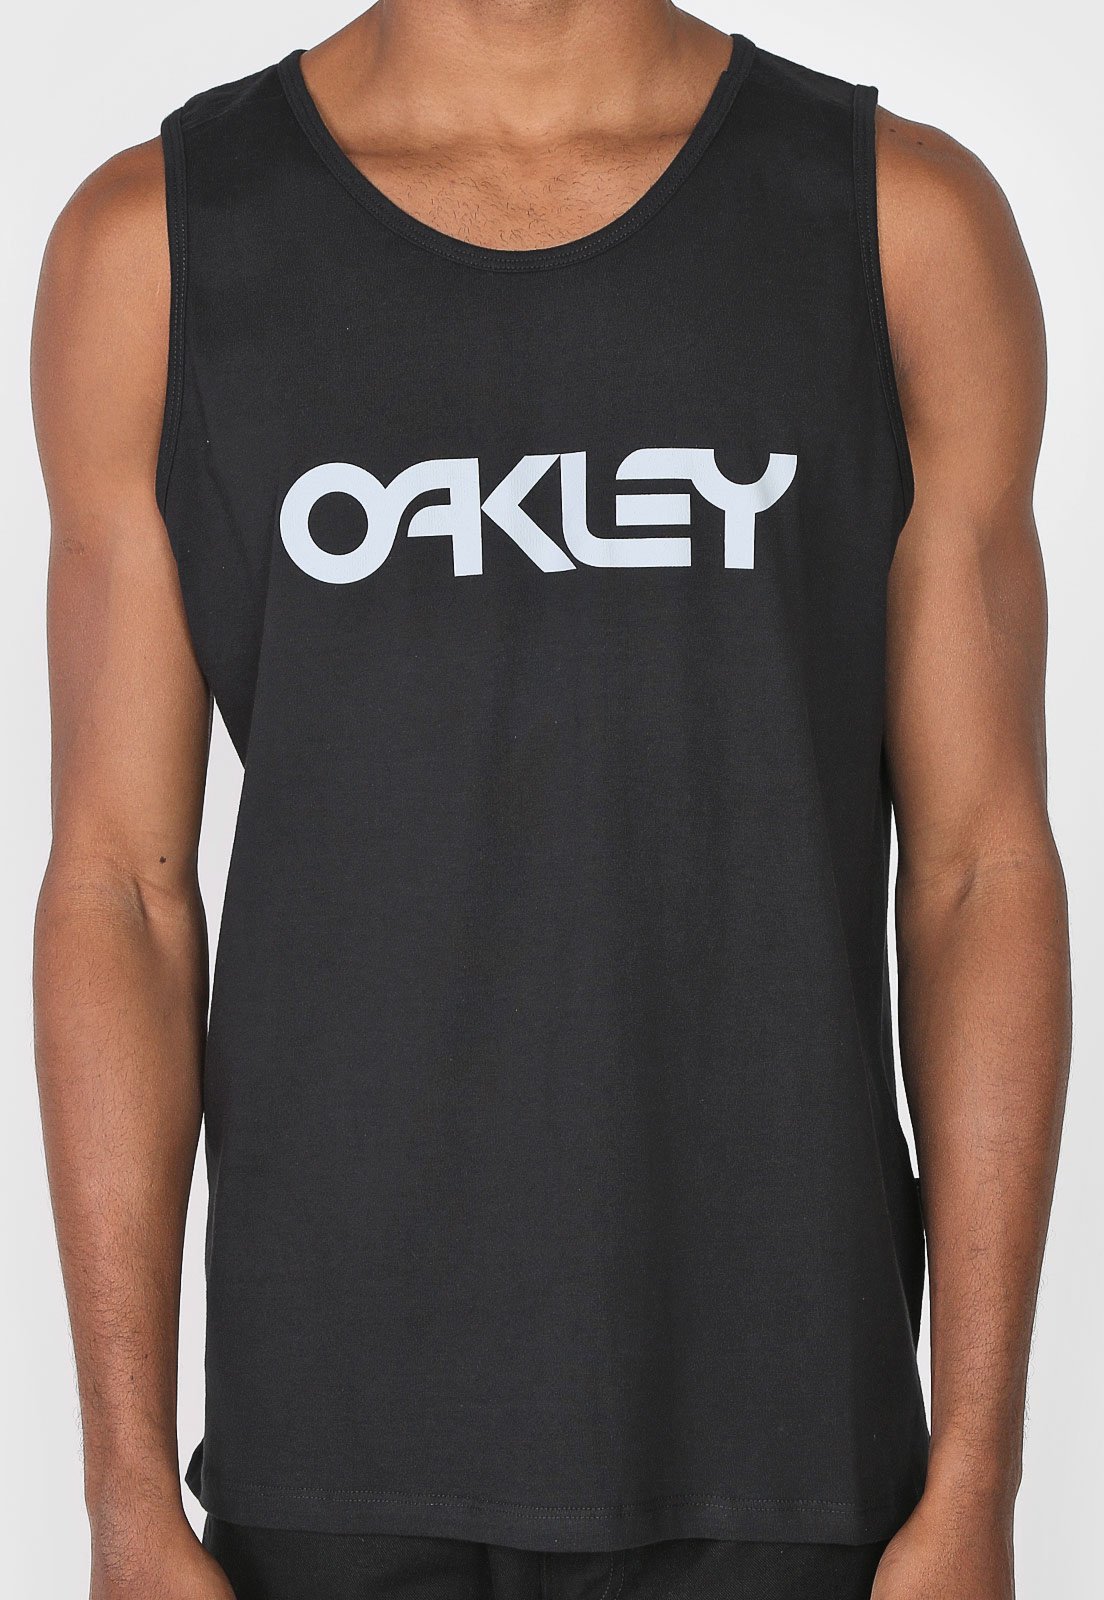 Oakley Men's Tank Tops